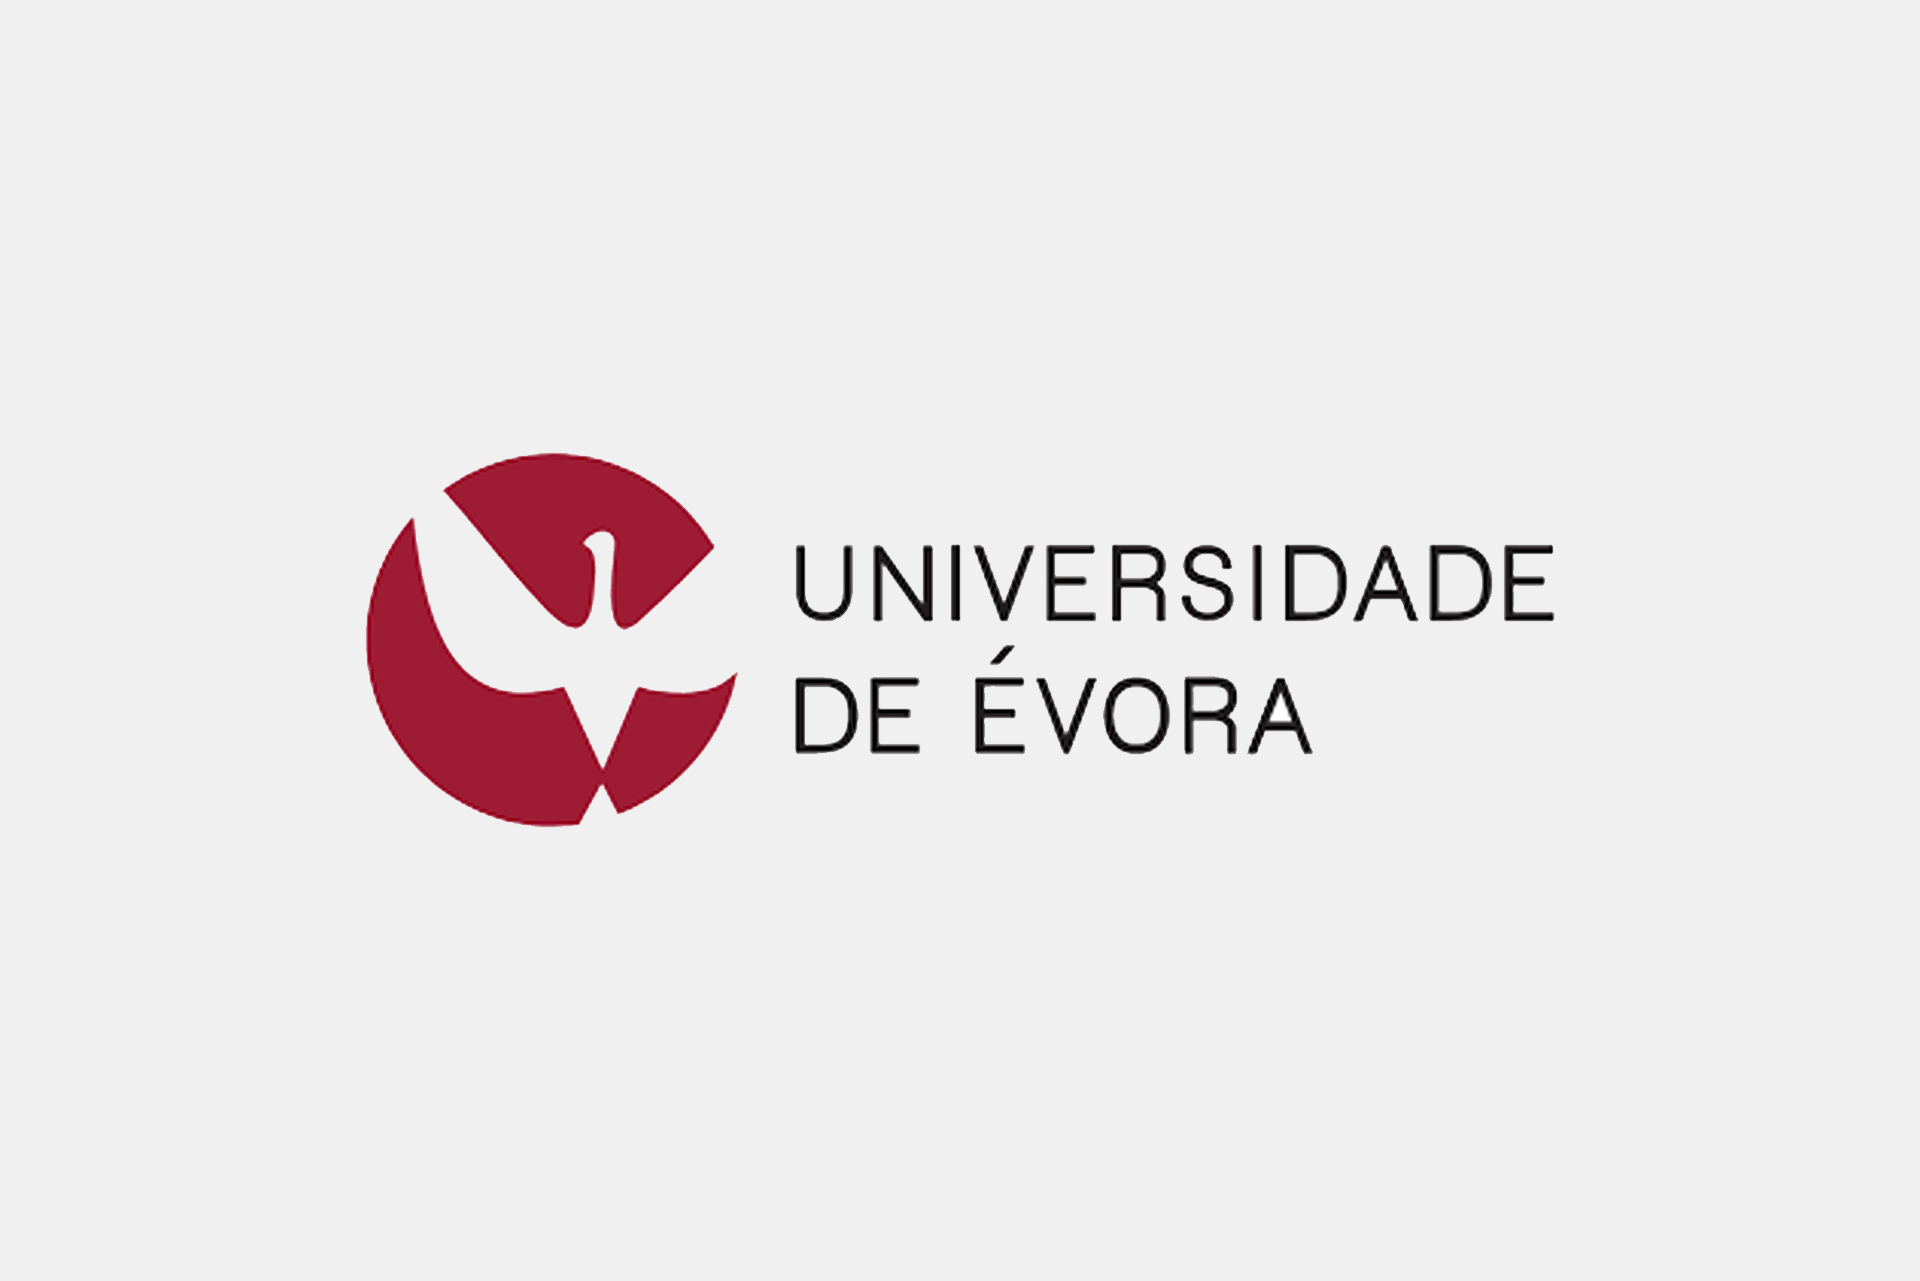 UNIVERSIDADE DE ÉVORA (Portugal)